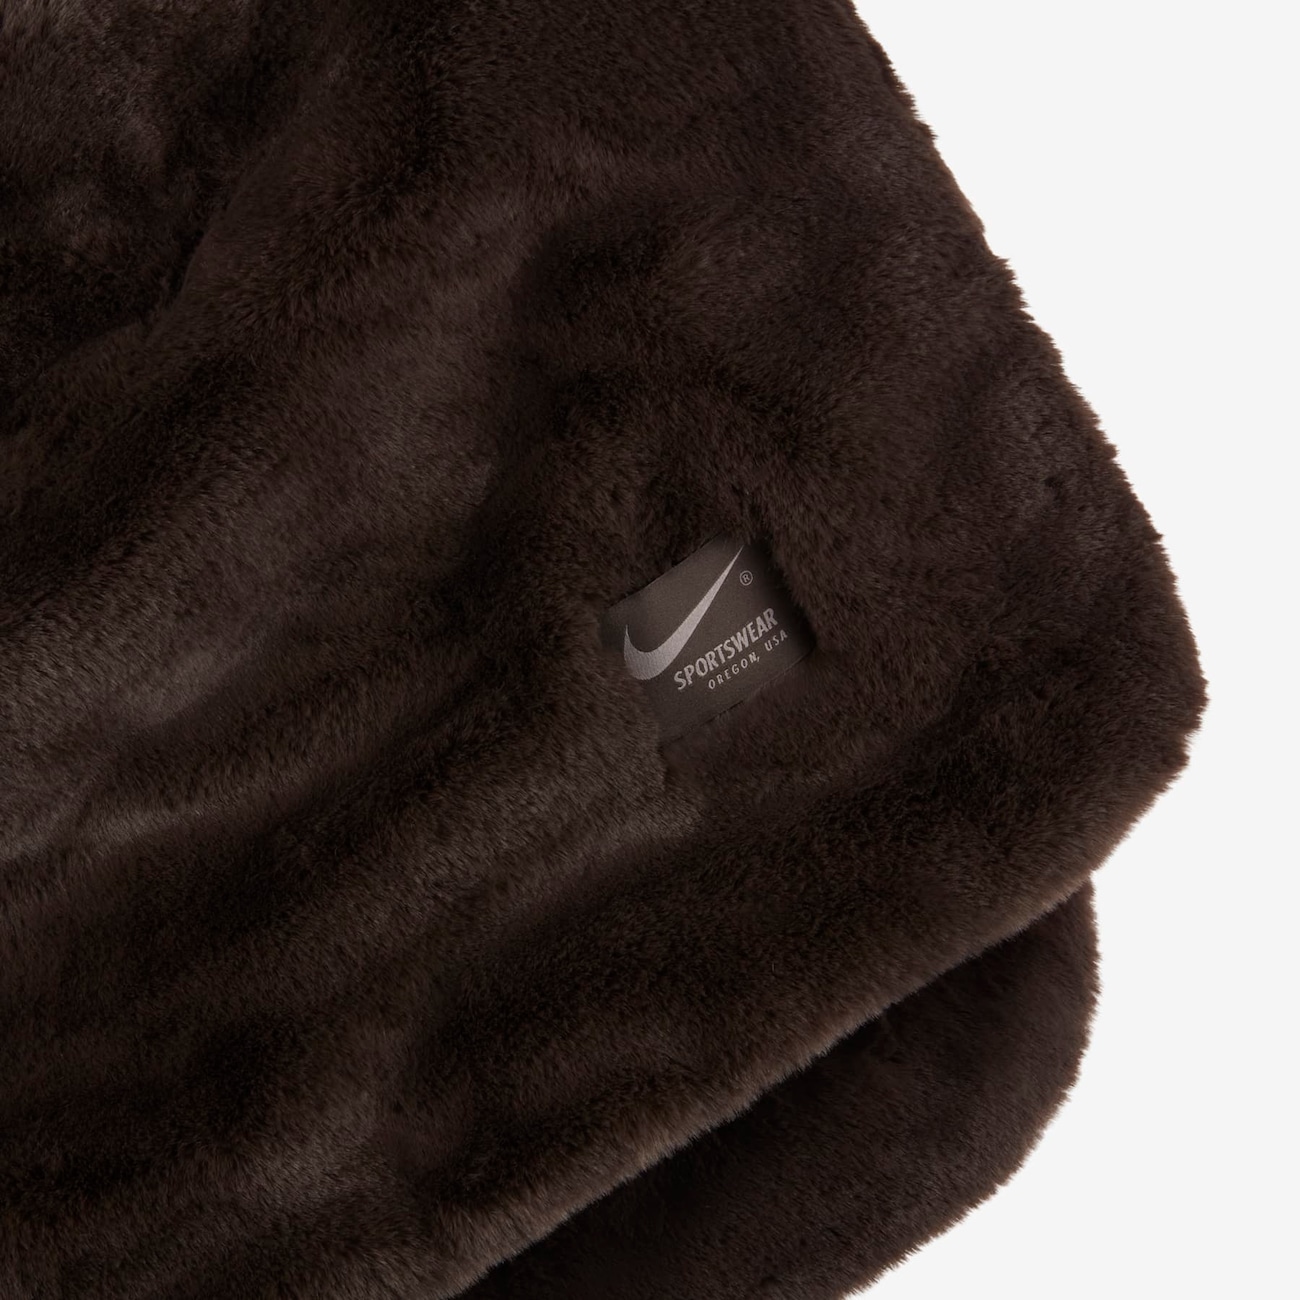 Cobertor Nike Sportswear Feminino - Foto 5